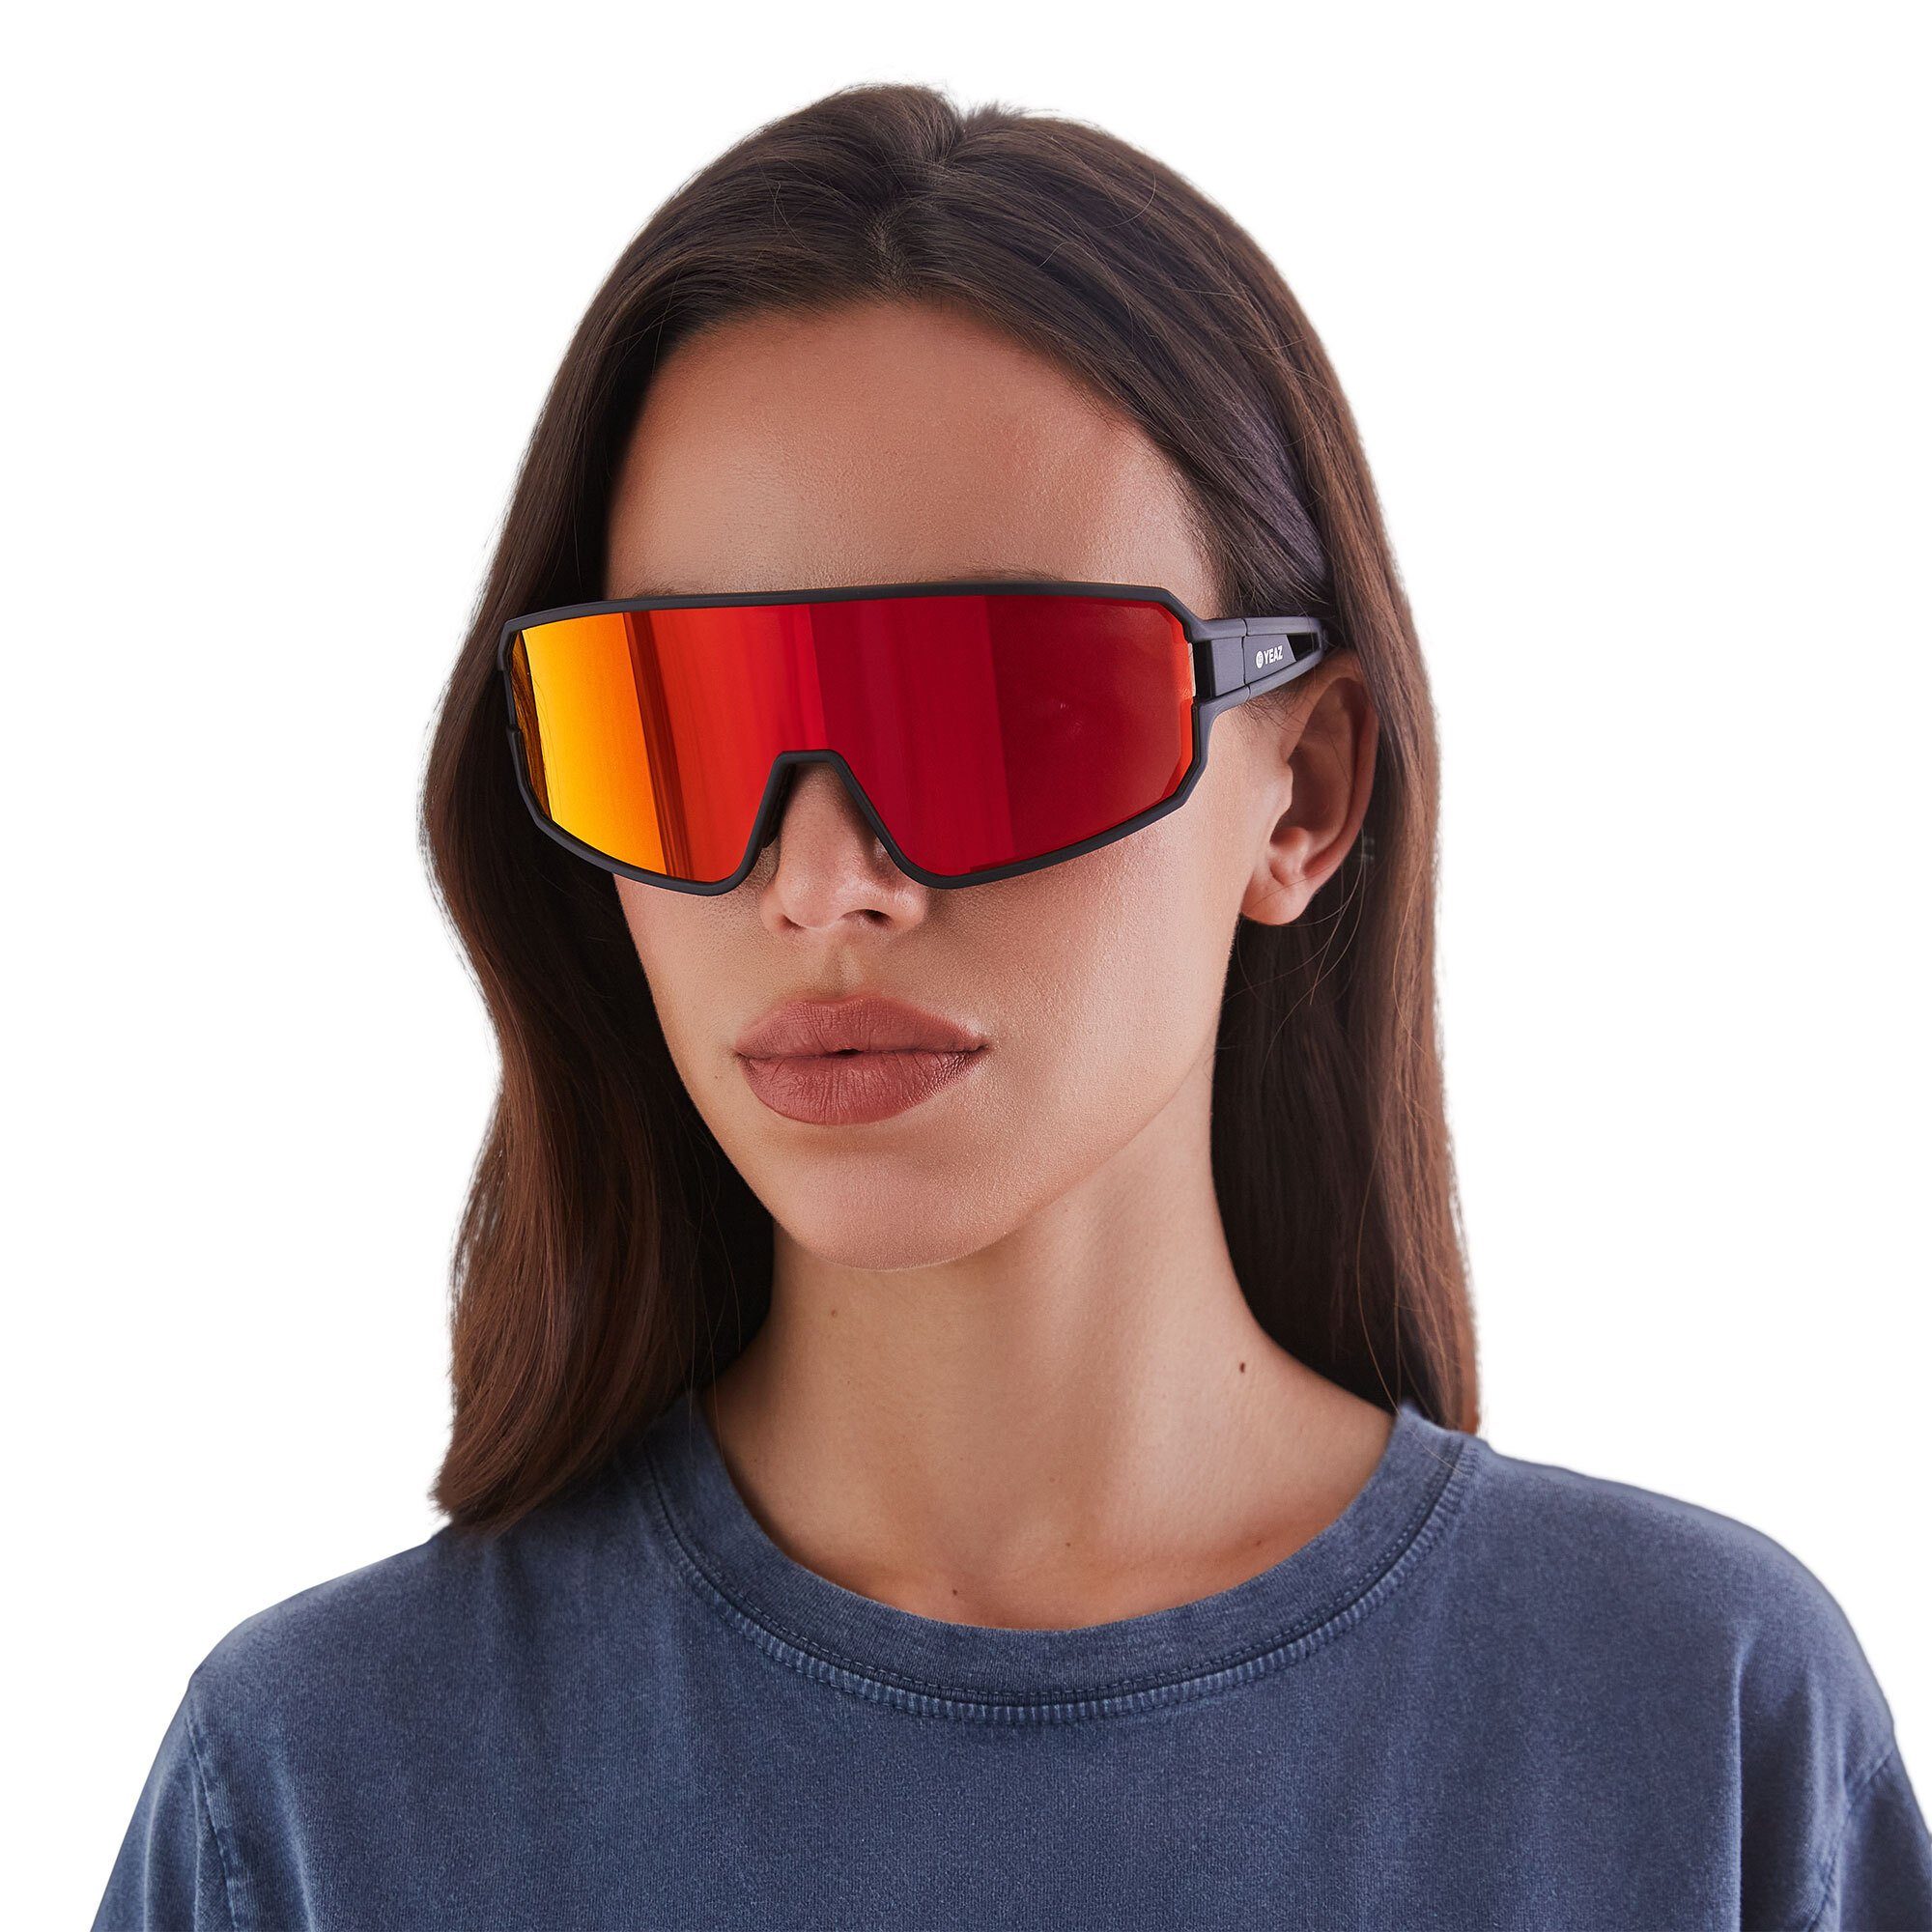 SUNWAVE optimierter Schutz bei Sicht black/red, YEAZ Guter Sportbrille sport-sonnenbrille